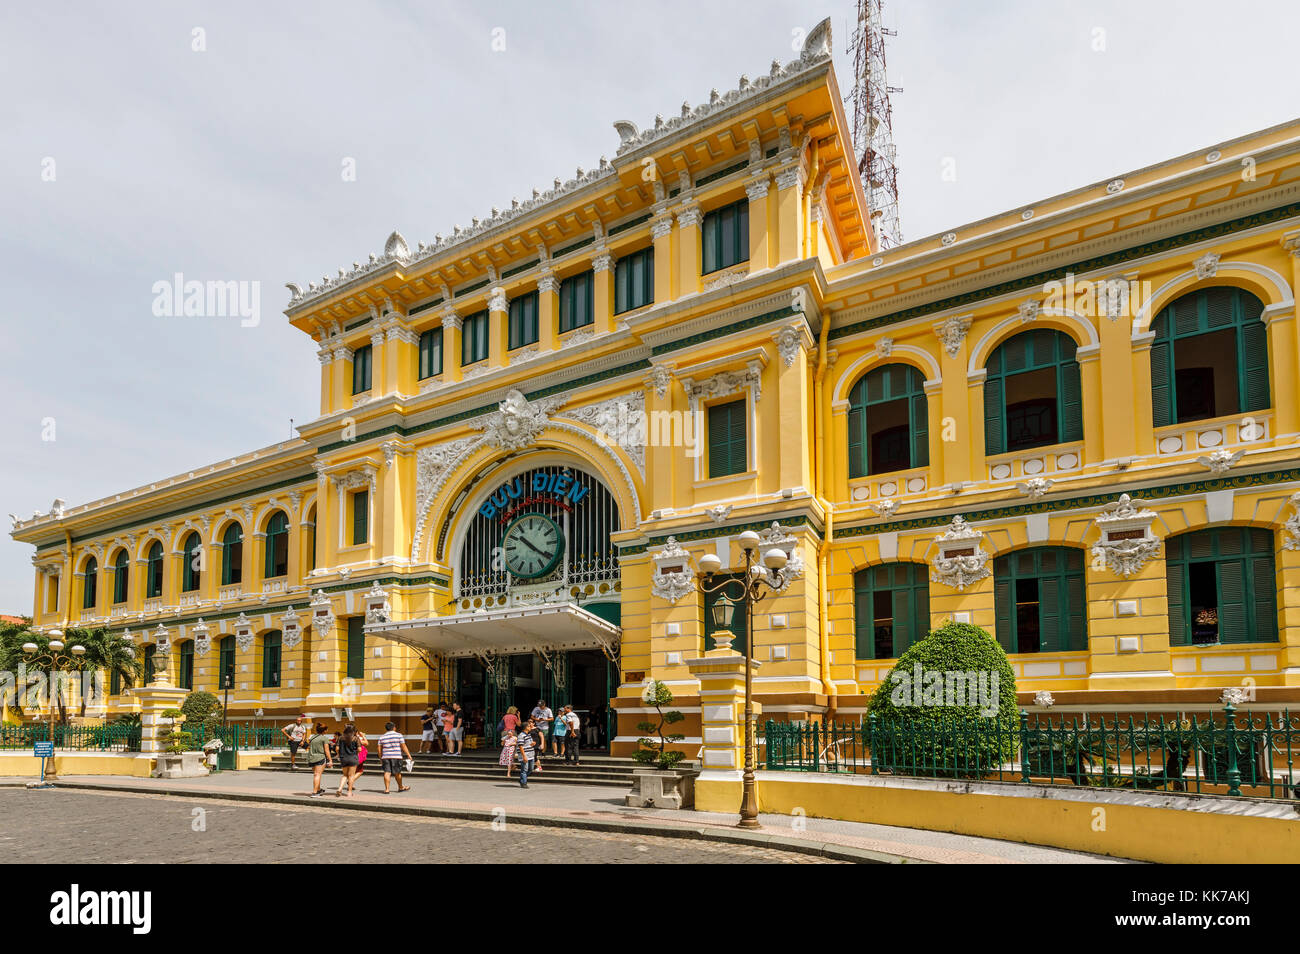 Central Post Office progettata da Gustave Eiffel, District 1 Dong Khoi Area, centro di Saigon (Ho Chi Minh City), Vietnam del sud, sud-est asiatico Foto Stock